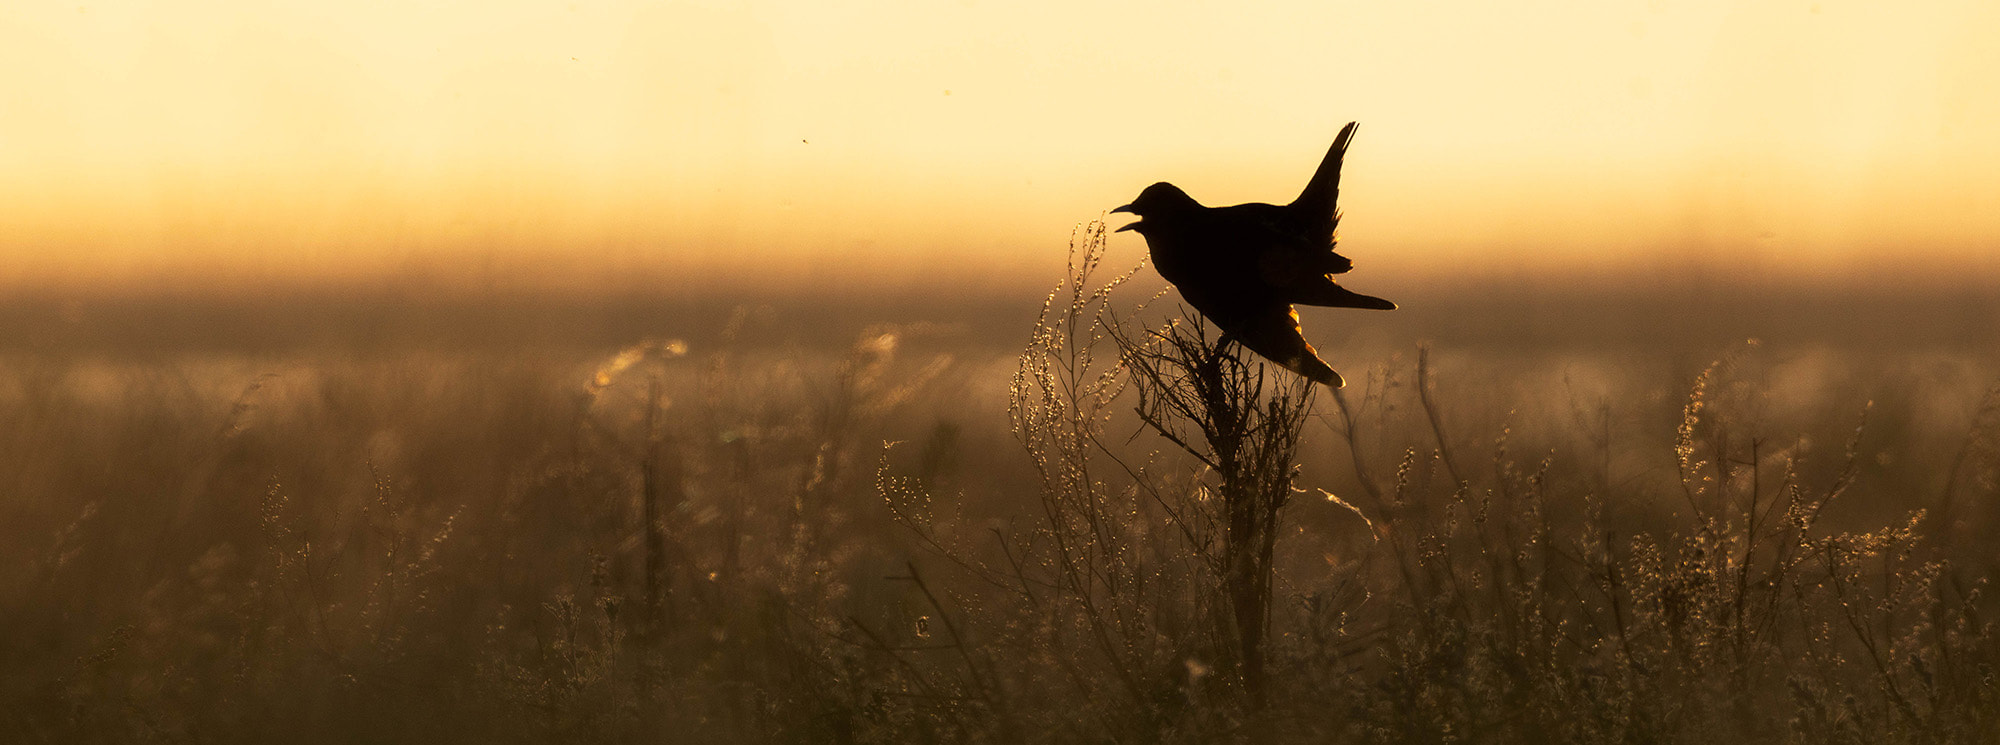 Backlit image of a singing Black lark in the Kazakh steppe